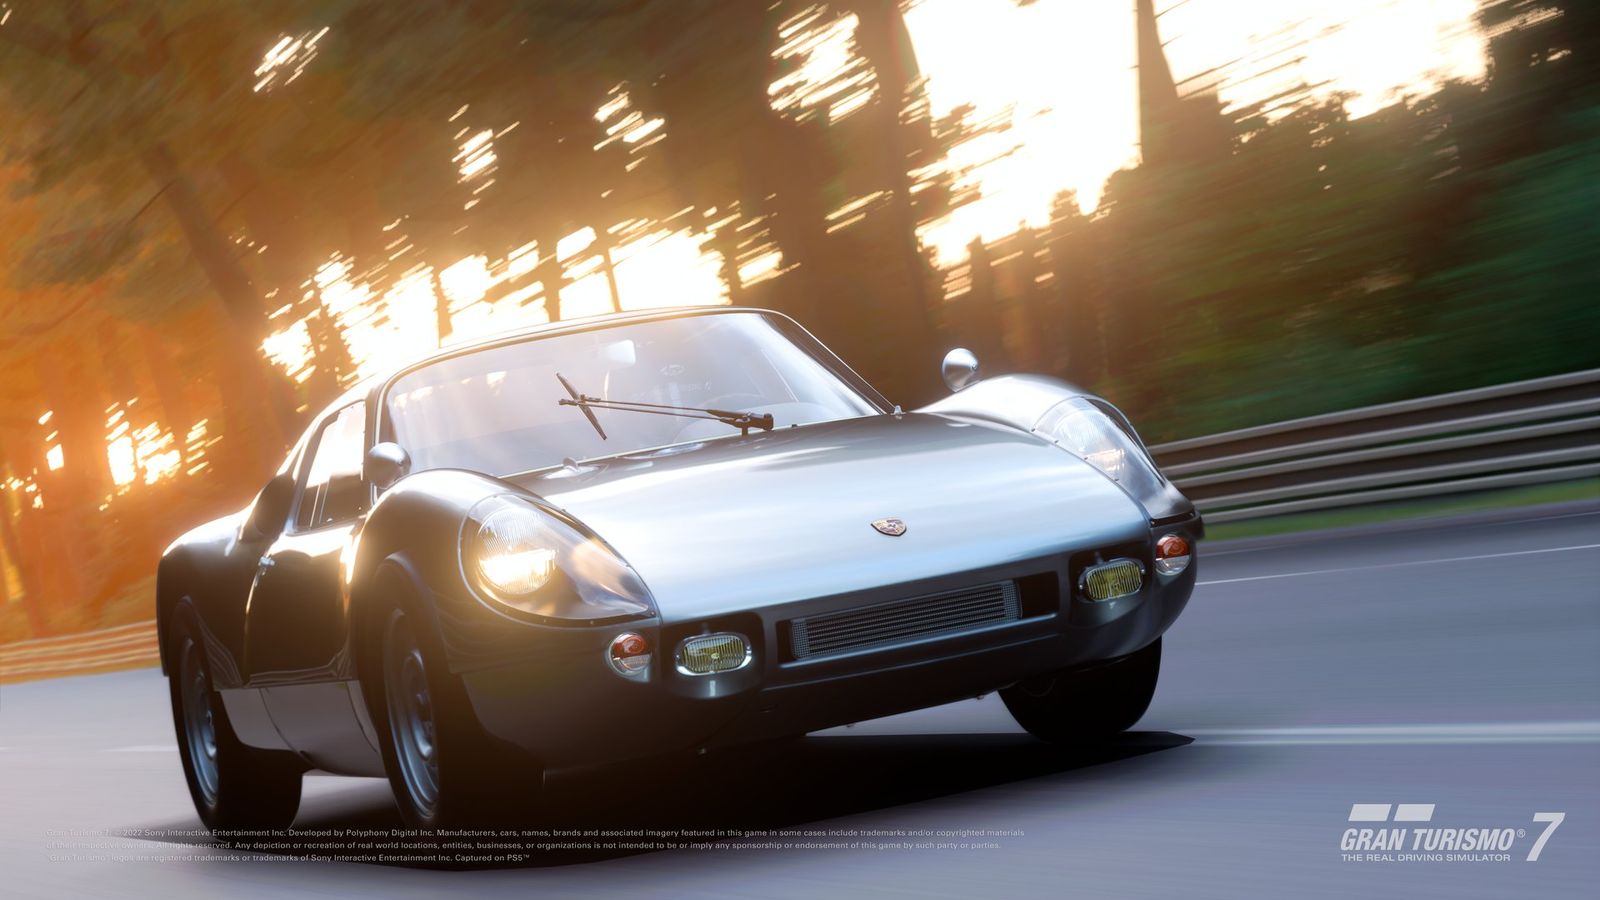 Gran Turismo 7 update 1.31 Porsche Carrera GTS (904) '64